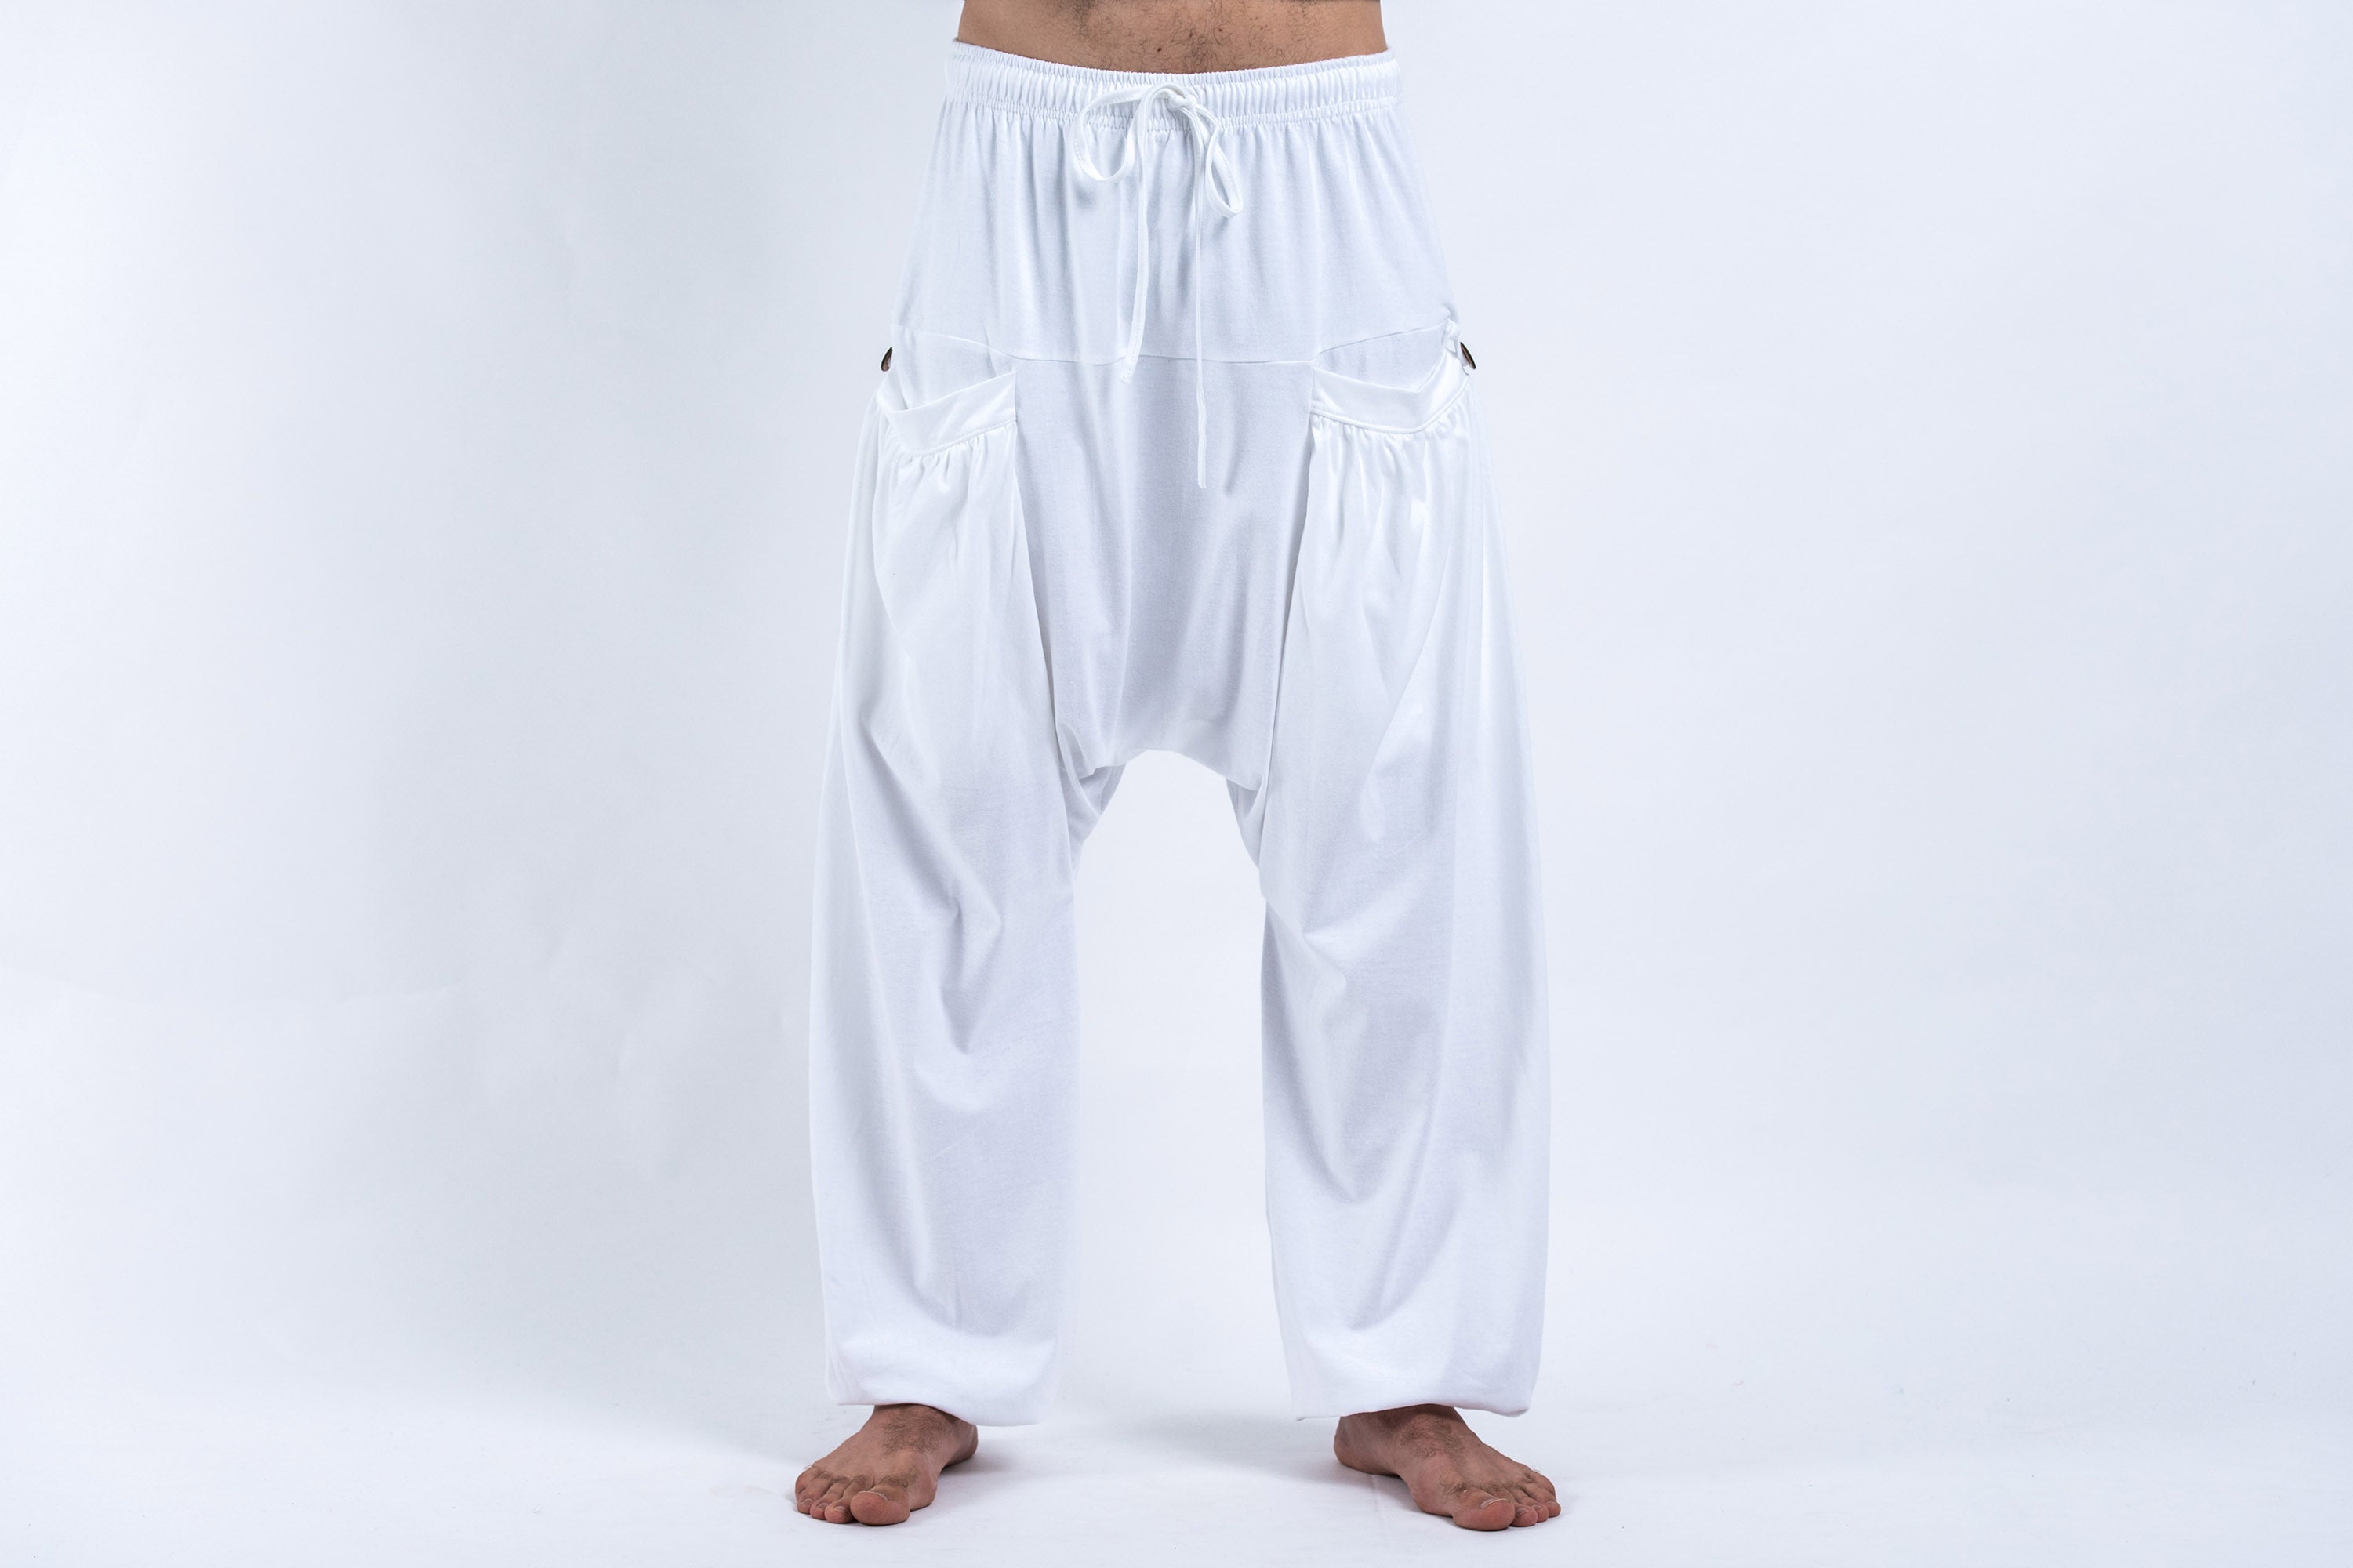 Basic Yoga Harem Pants – UmbaLove